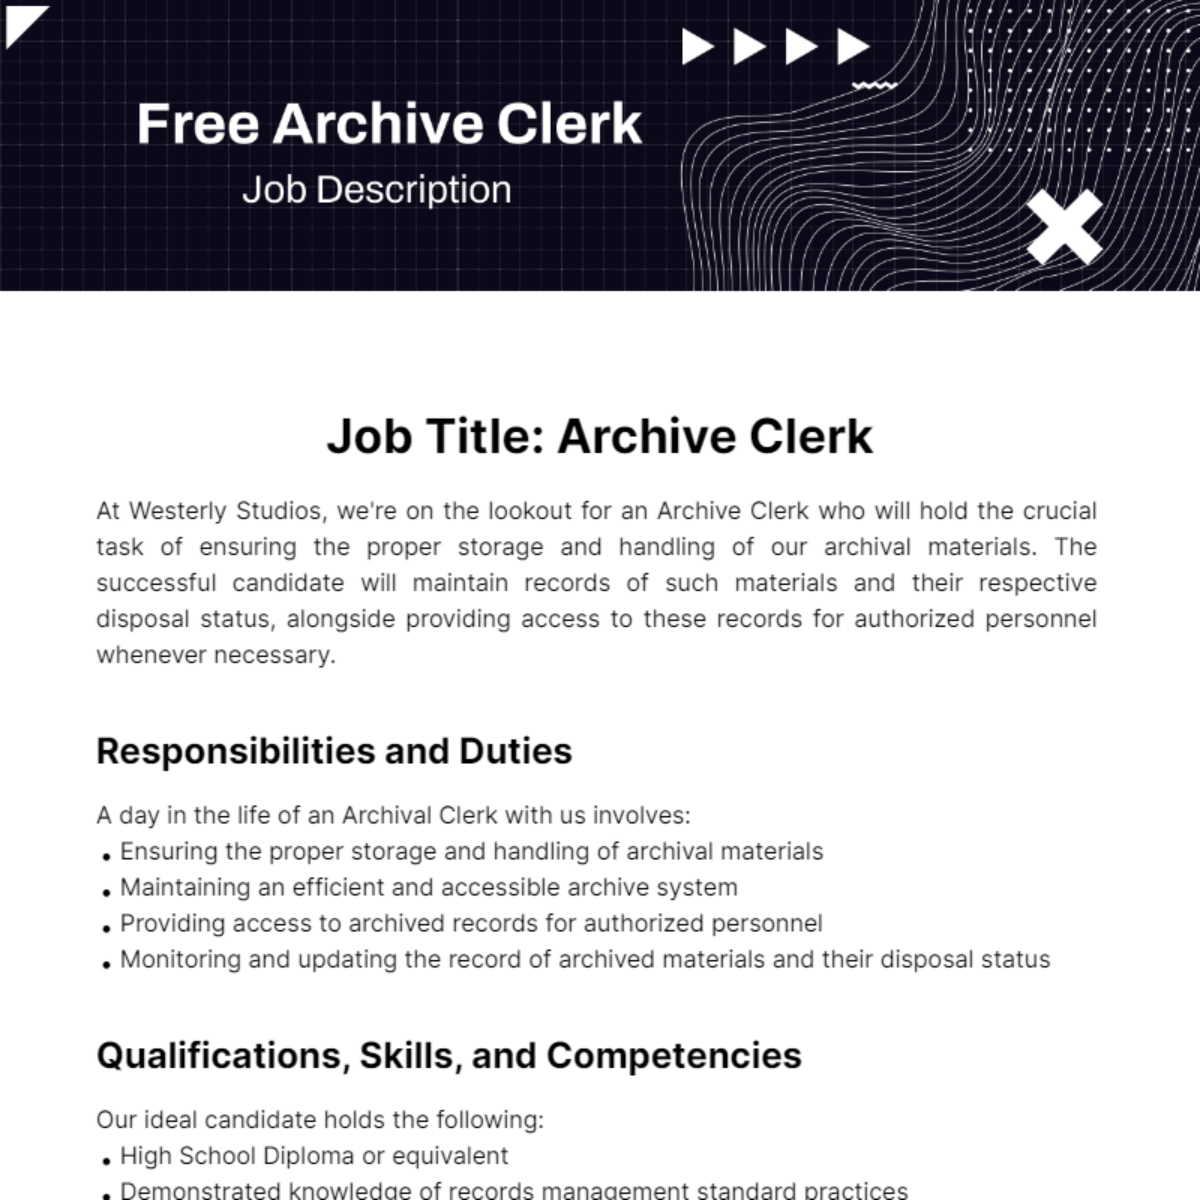 Free Archive Clerk Job Description Template